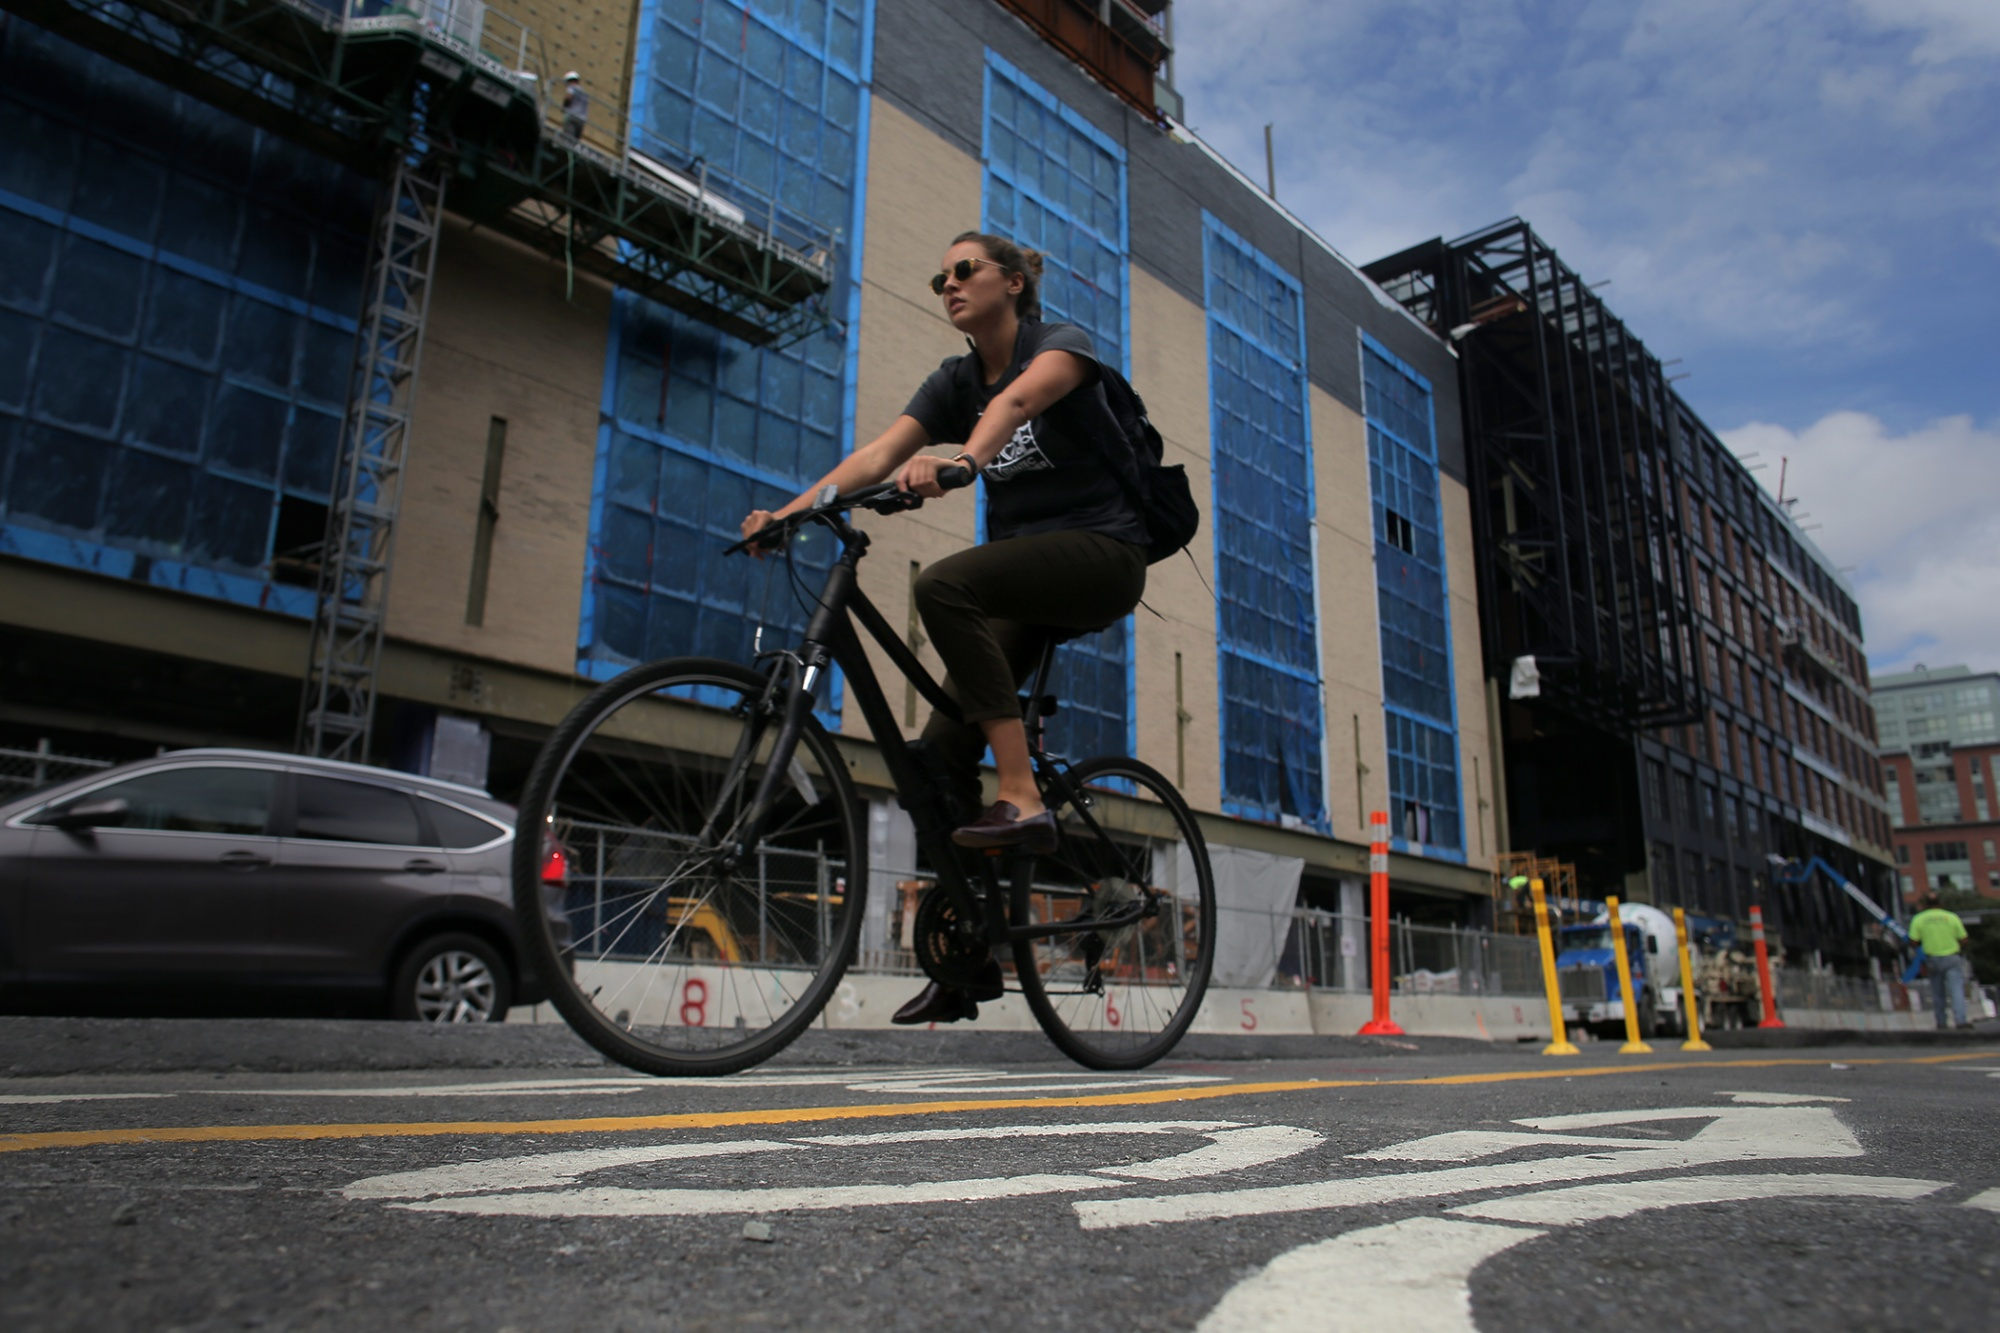 North America's Thriving Biking Communities